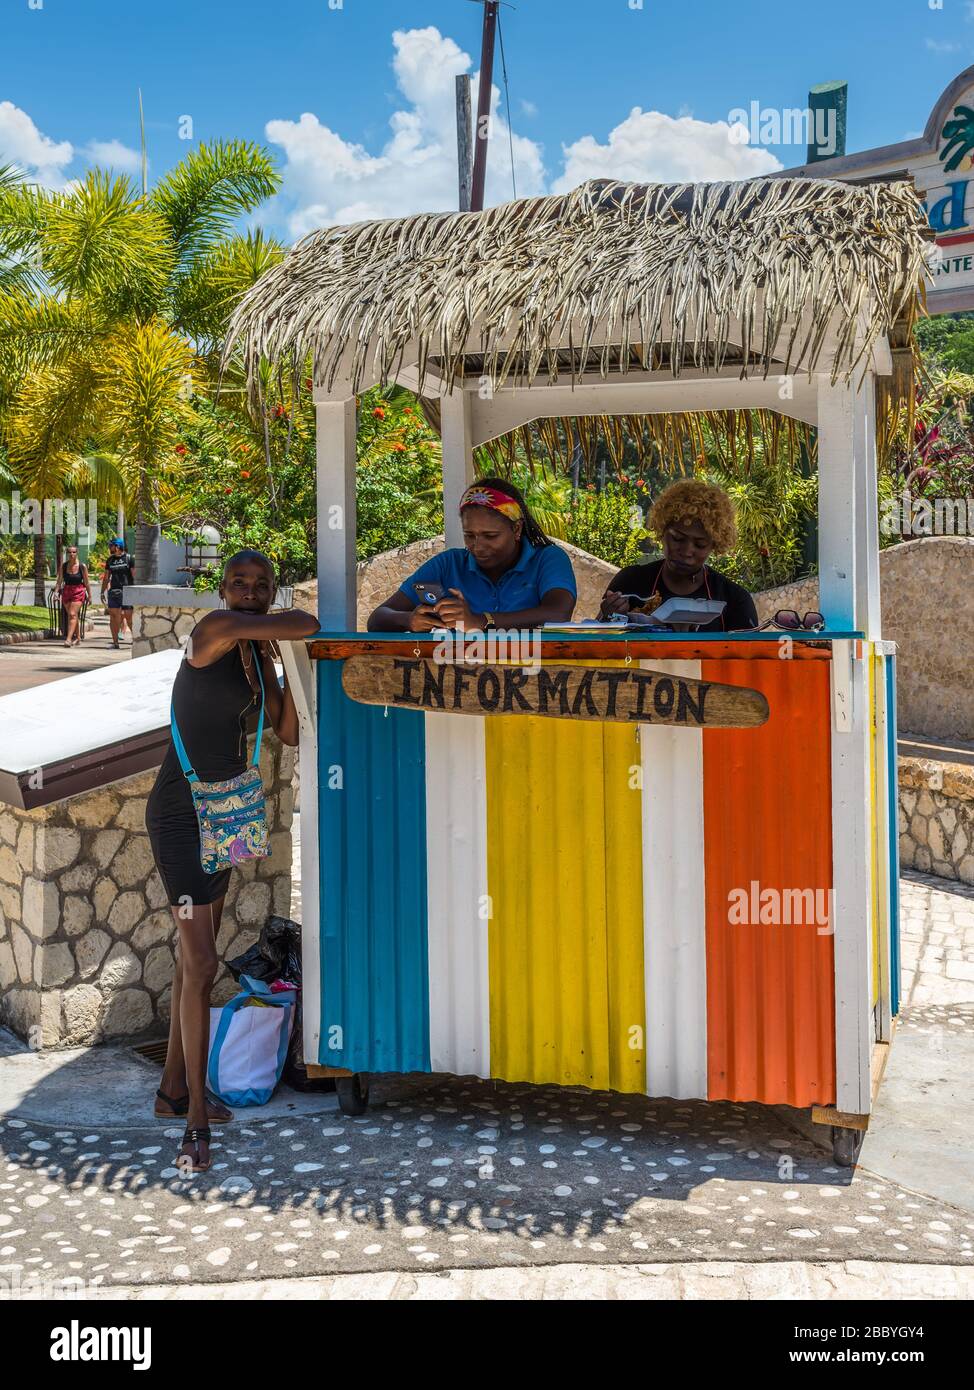 Ocho Rios, Giamaica - 22 aprile 2019: Chiosco informazioni turistiche a Ocho Rios, Giamaica. Oggi, la città è una delle destinazioni turistiche più importanti della Giamaica. Foto Stock